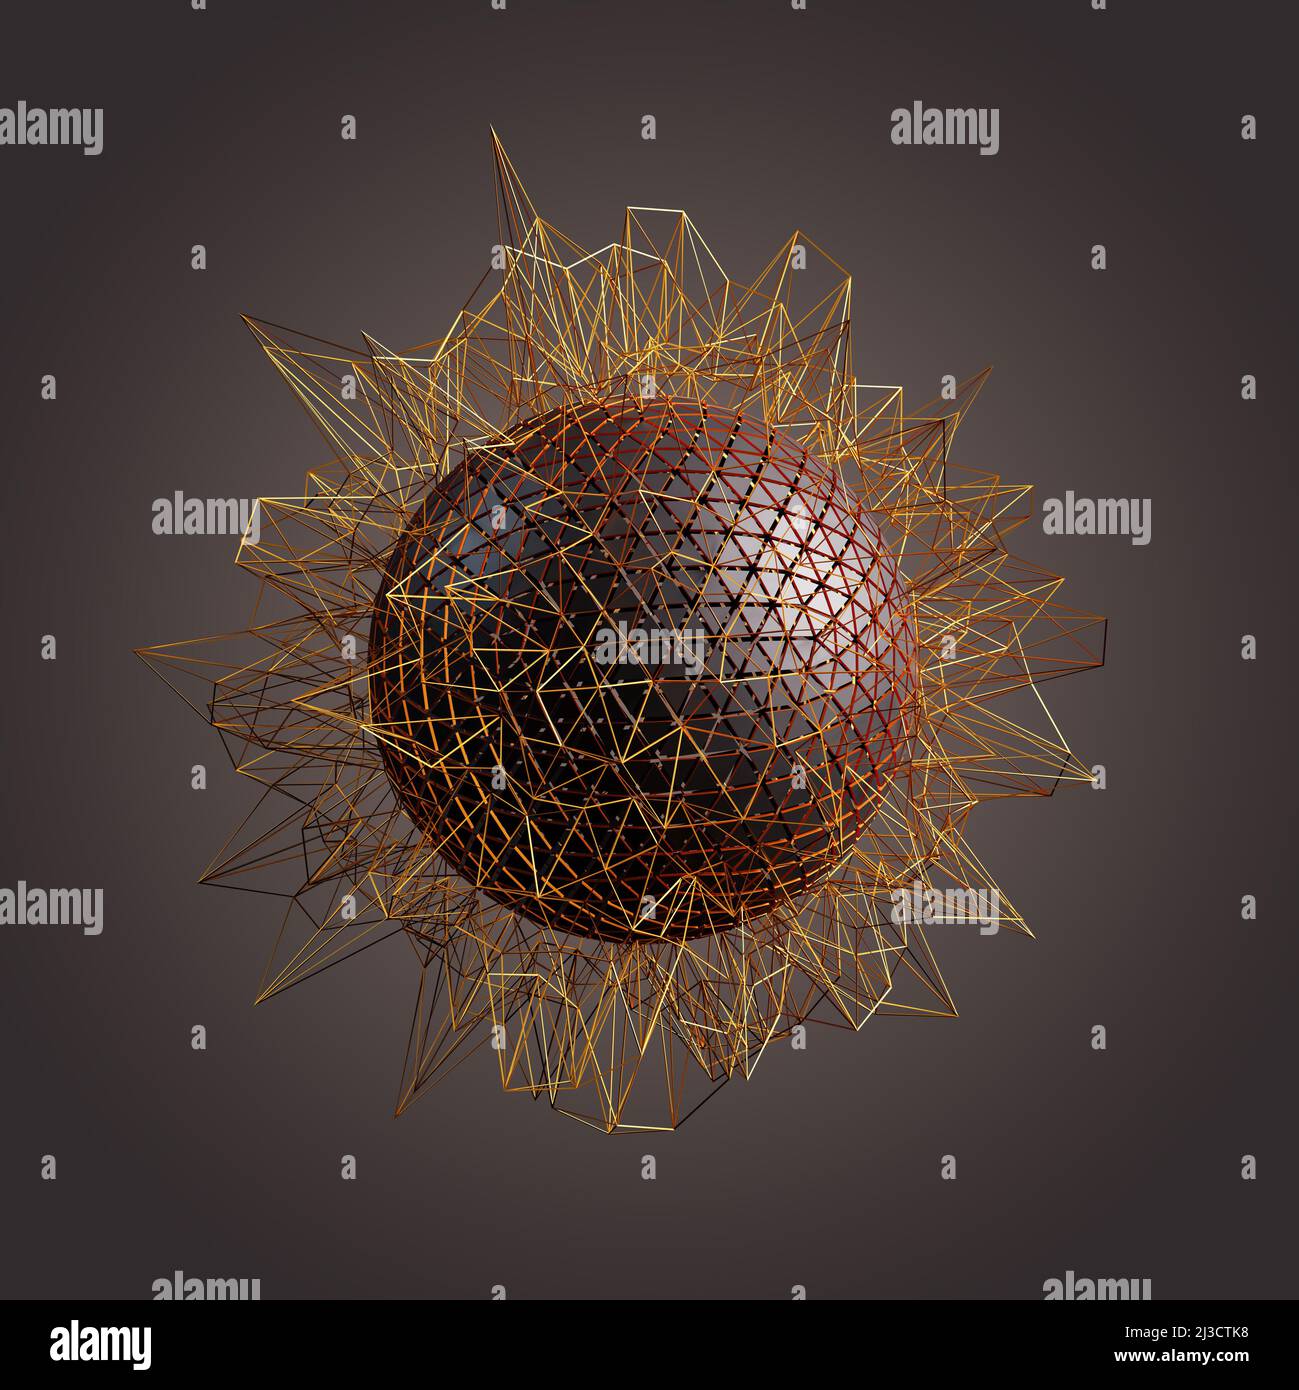 Image abstraite de la sphère avec des pointes autour et la sphère composée de triangles. Concept de communication ou de complexité. Banque D'Images